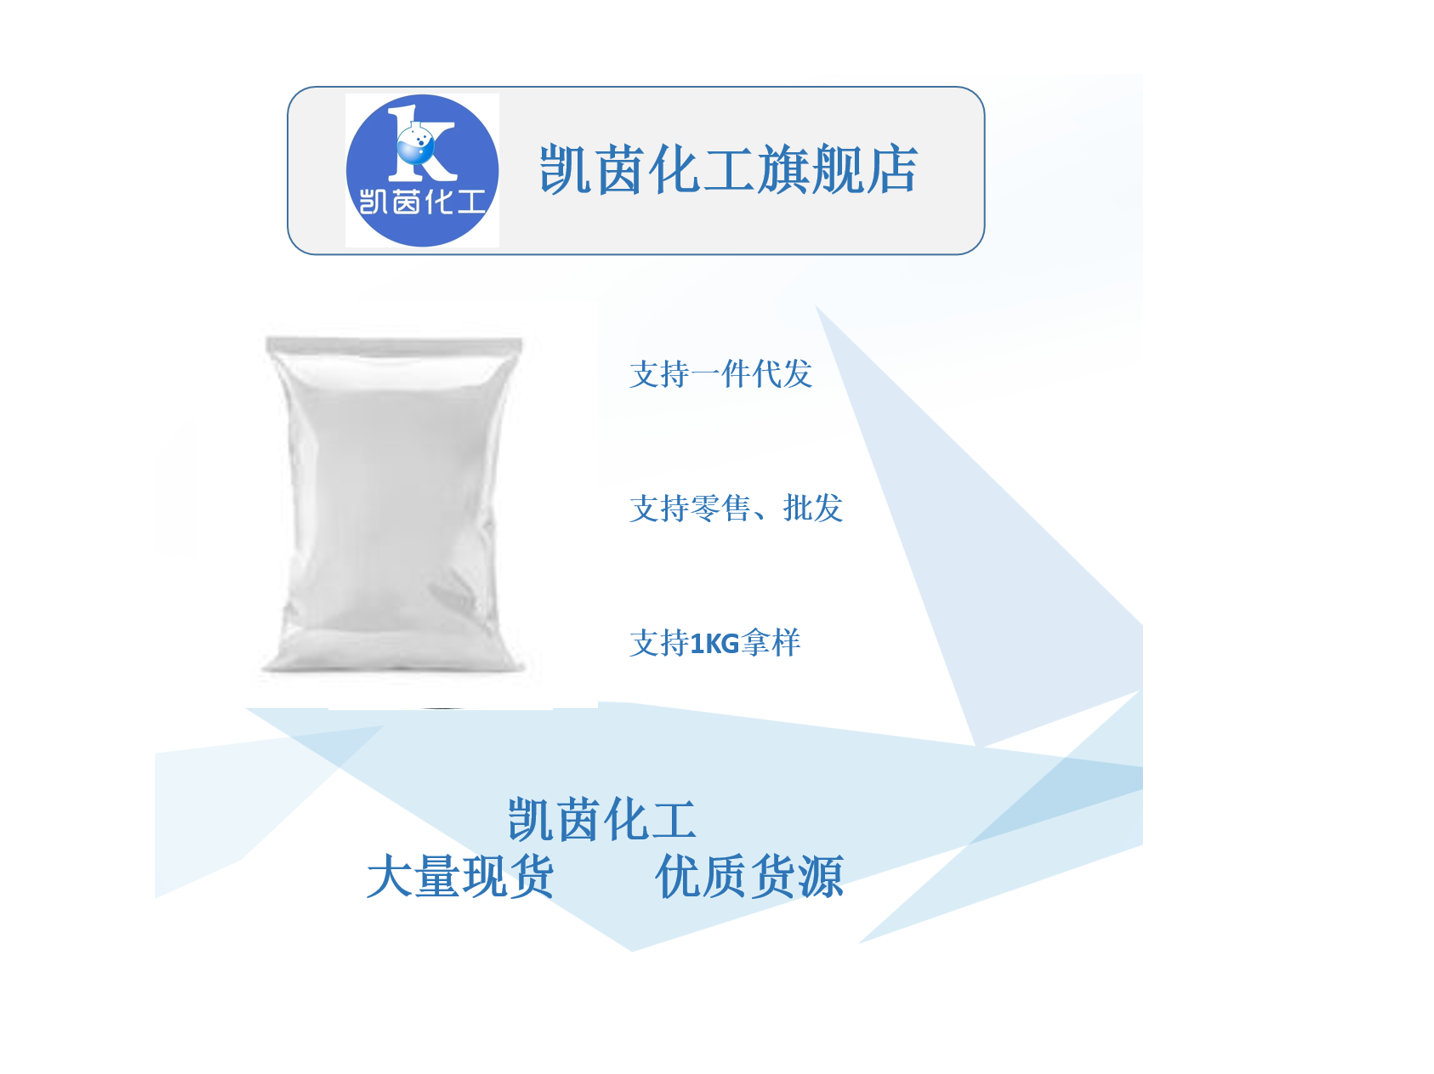 矽比科 BR-5 高岭土 高纯度 微细硅微粉 橡胶化合物专用添加剂